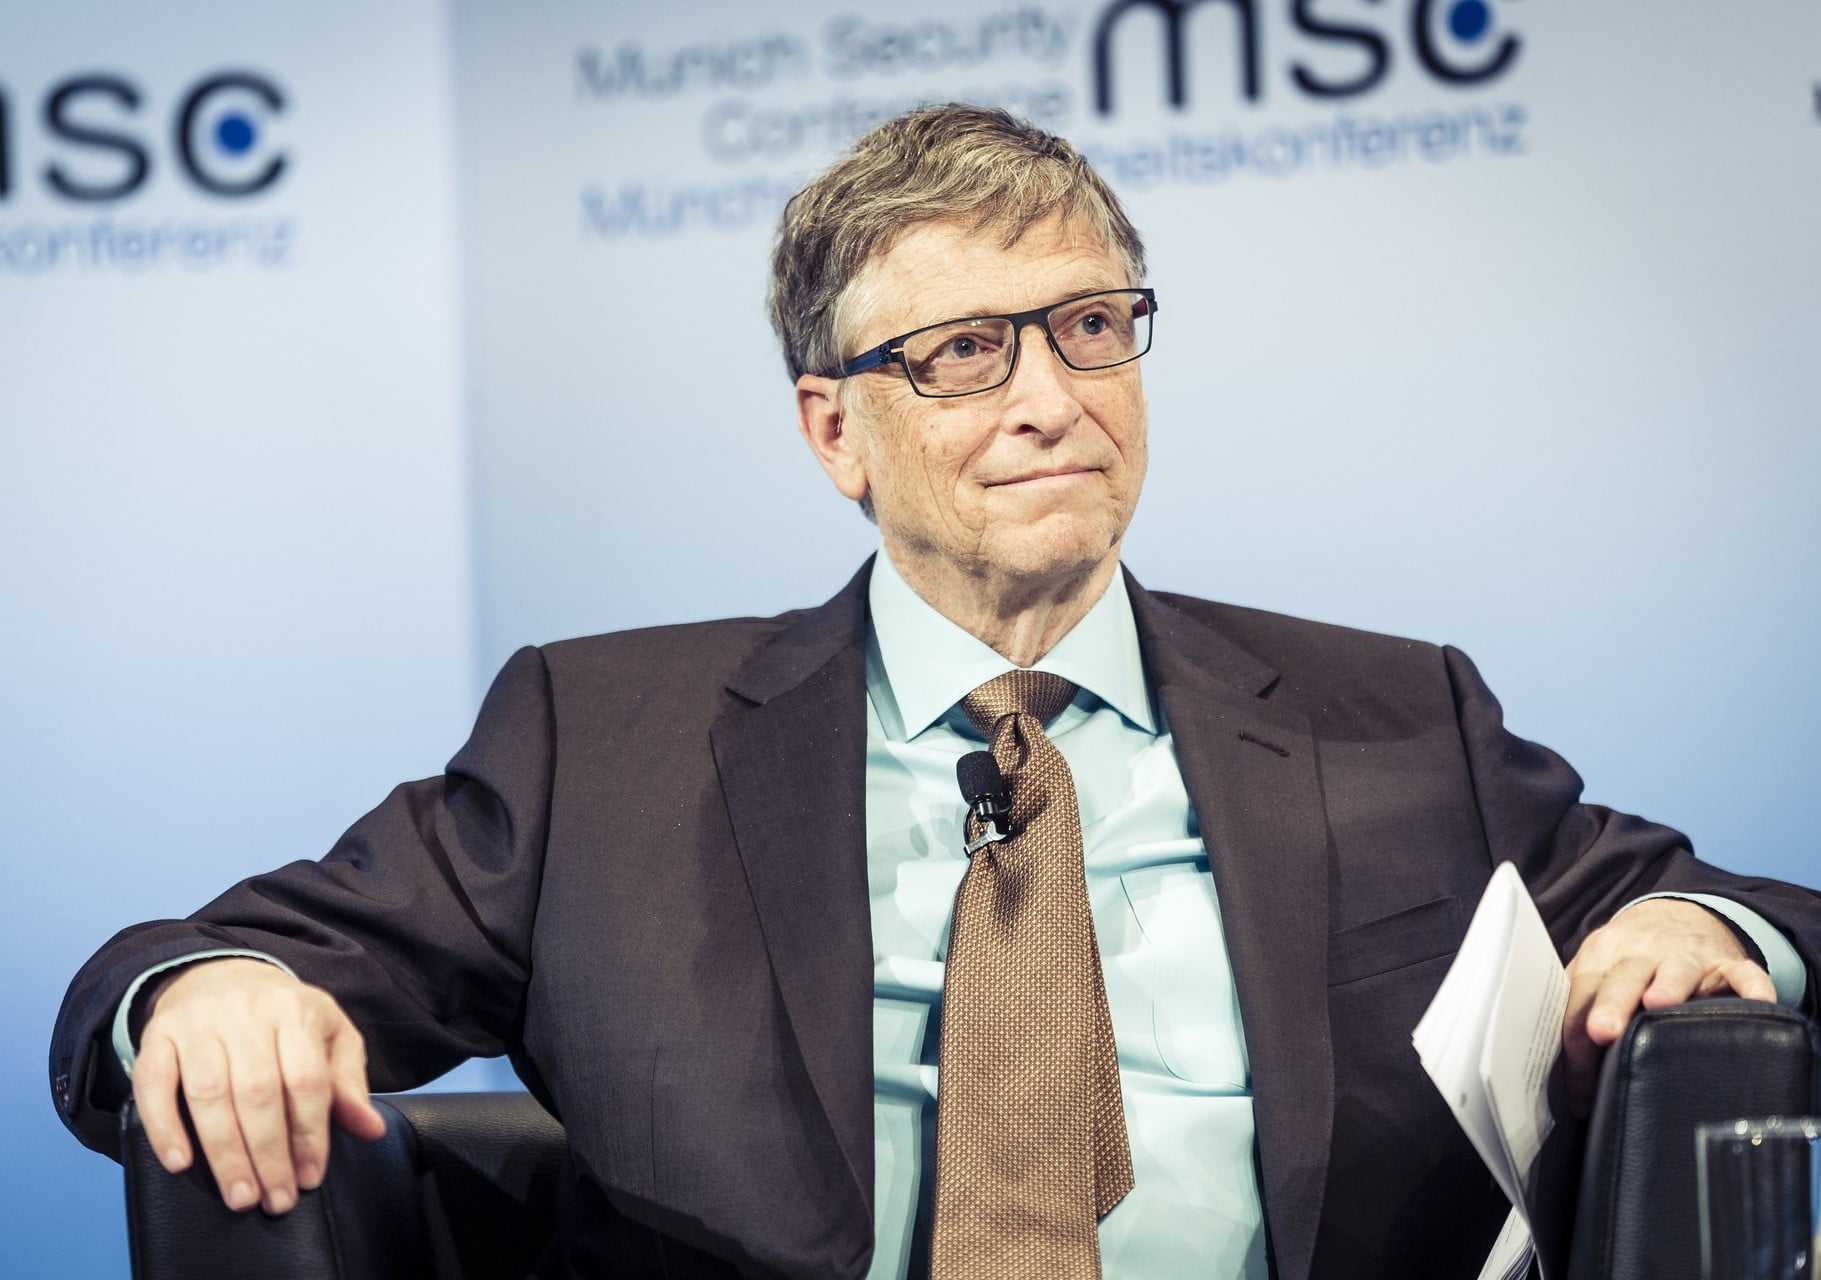 Bill_Gates_rigeste_personer